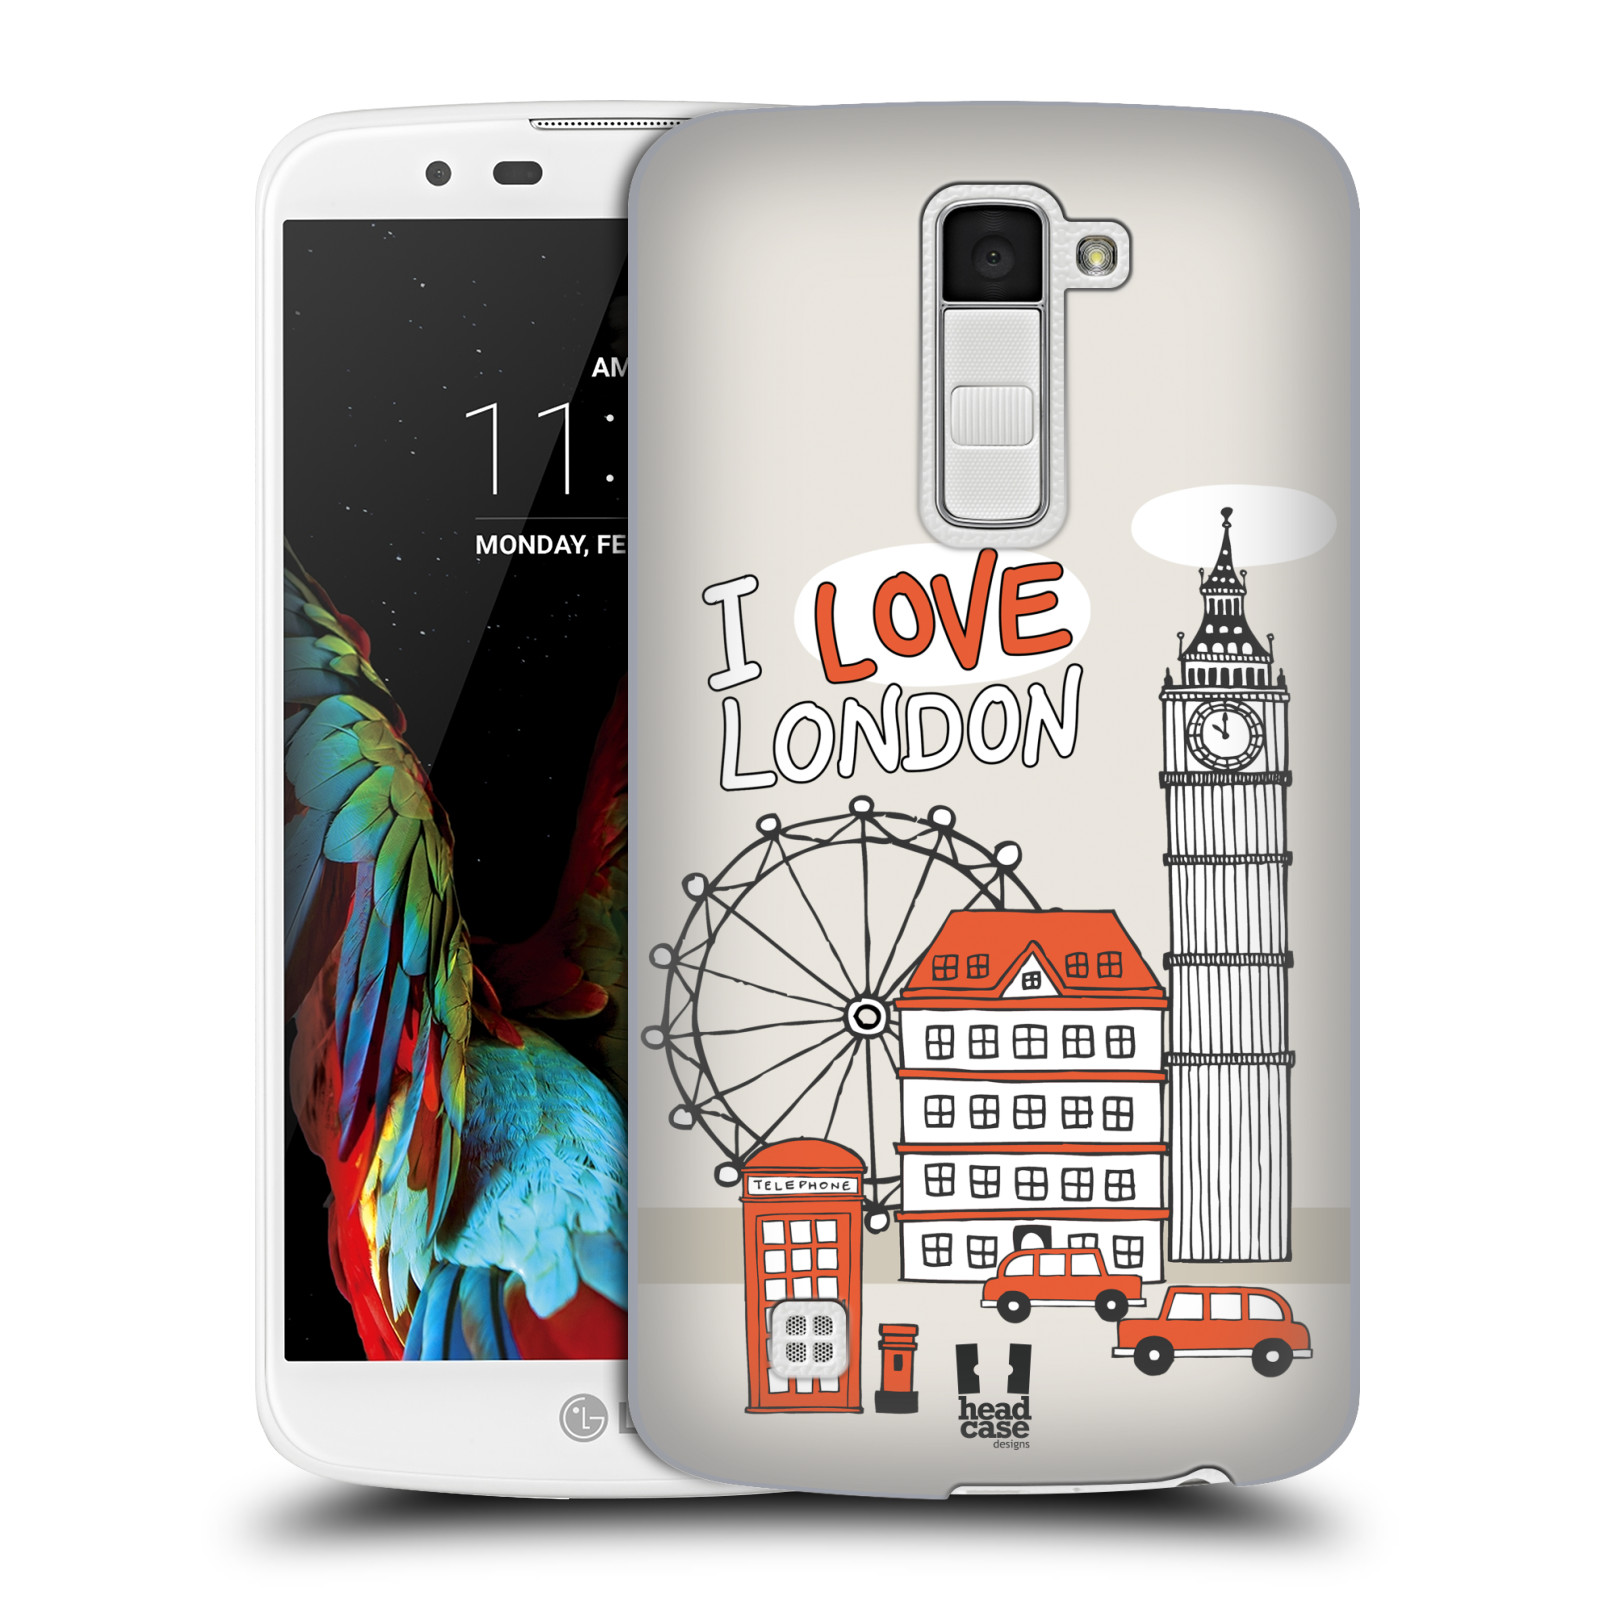 HEAD CASE plastový obal na mobil LG K10 vzor Kreslená městečka ČERVENÁ, Anglie, Londýn, I LOVE LONDON